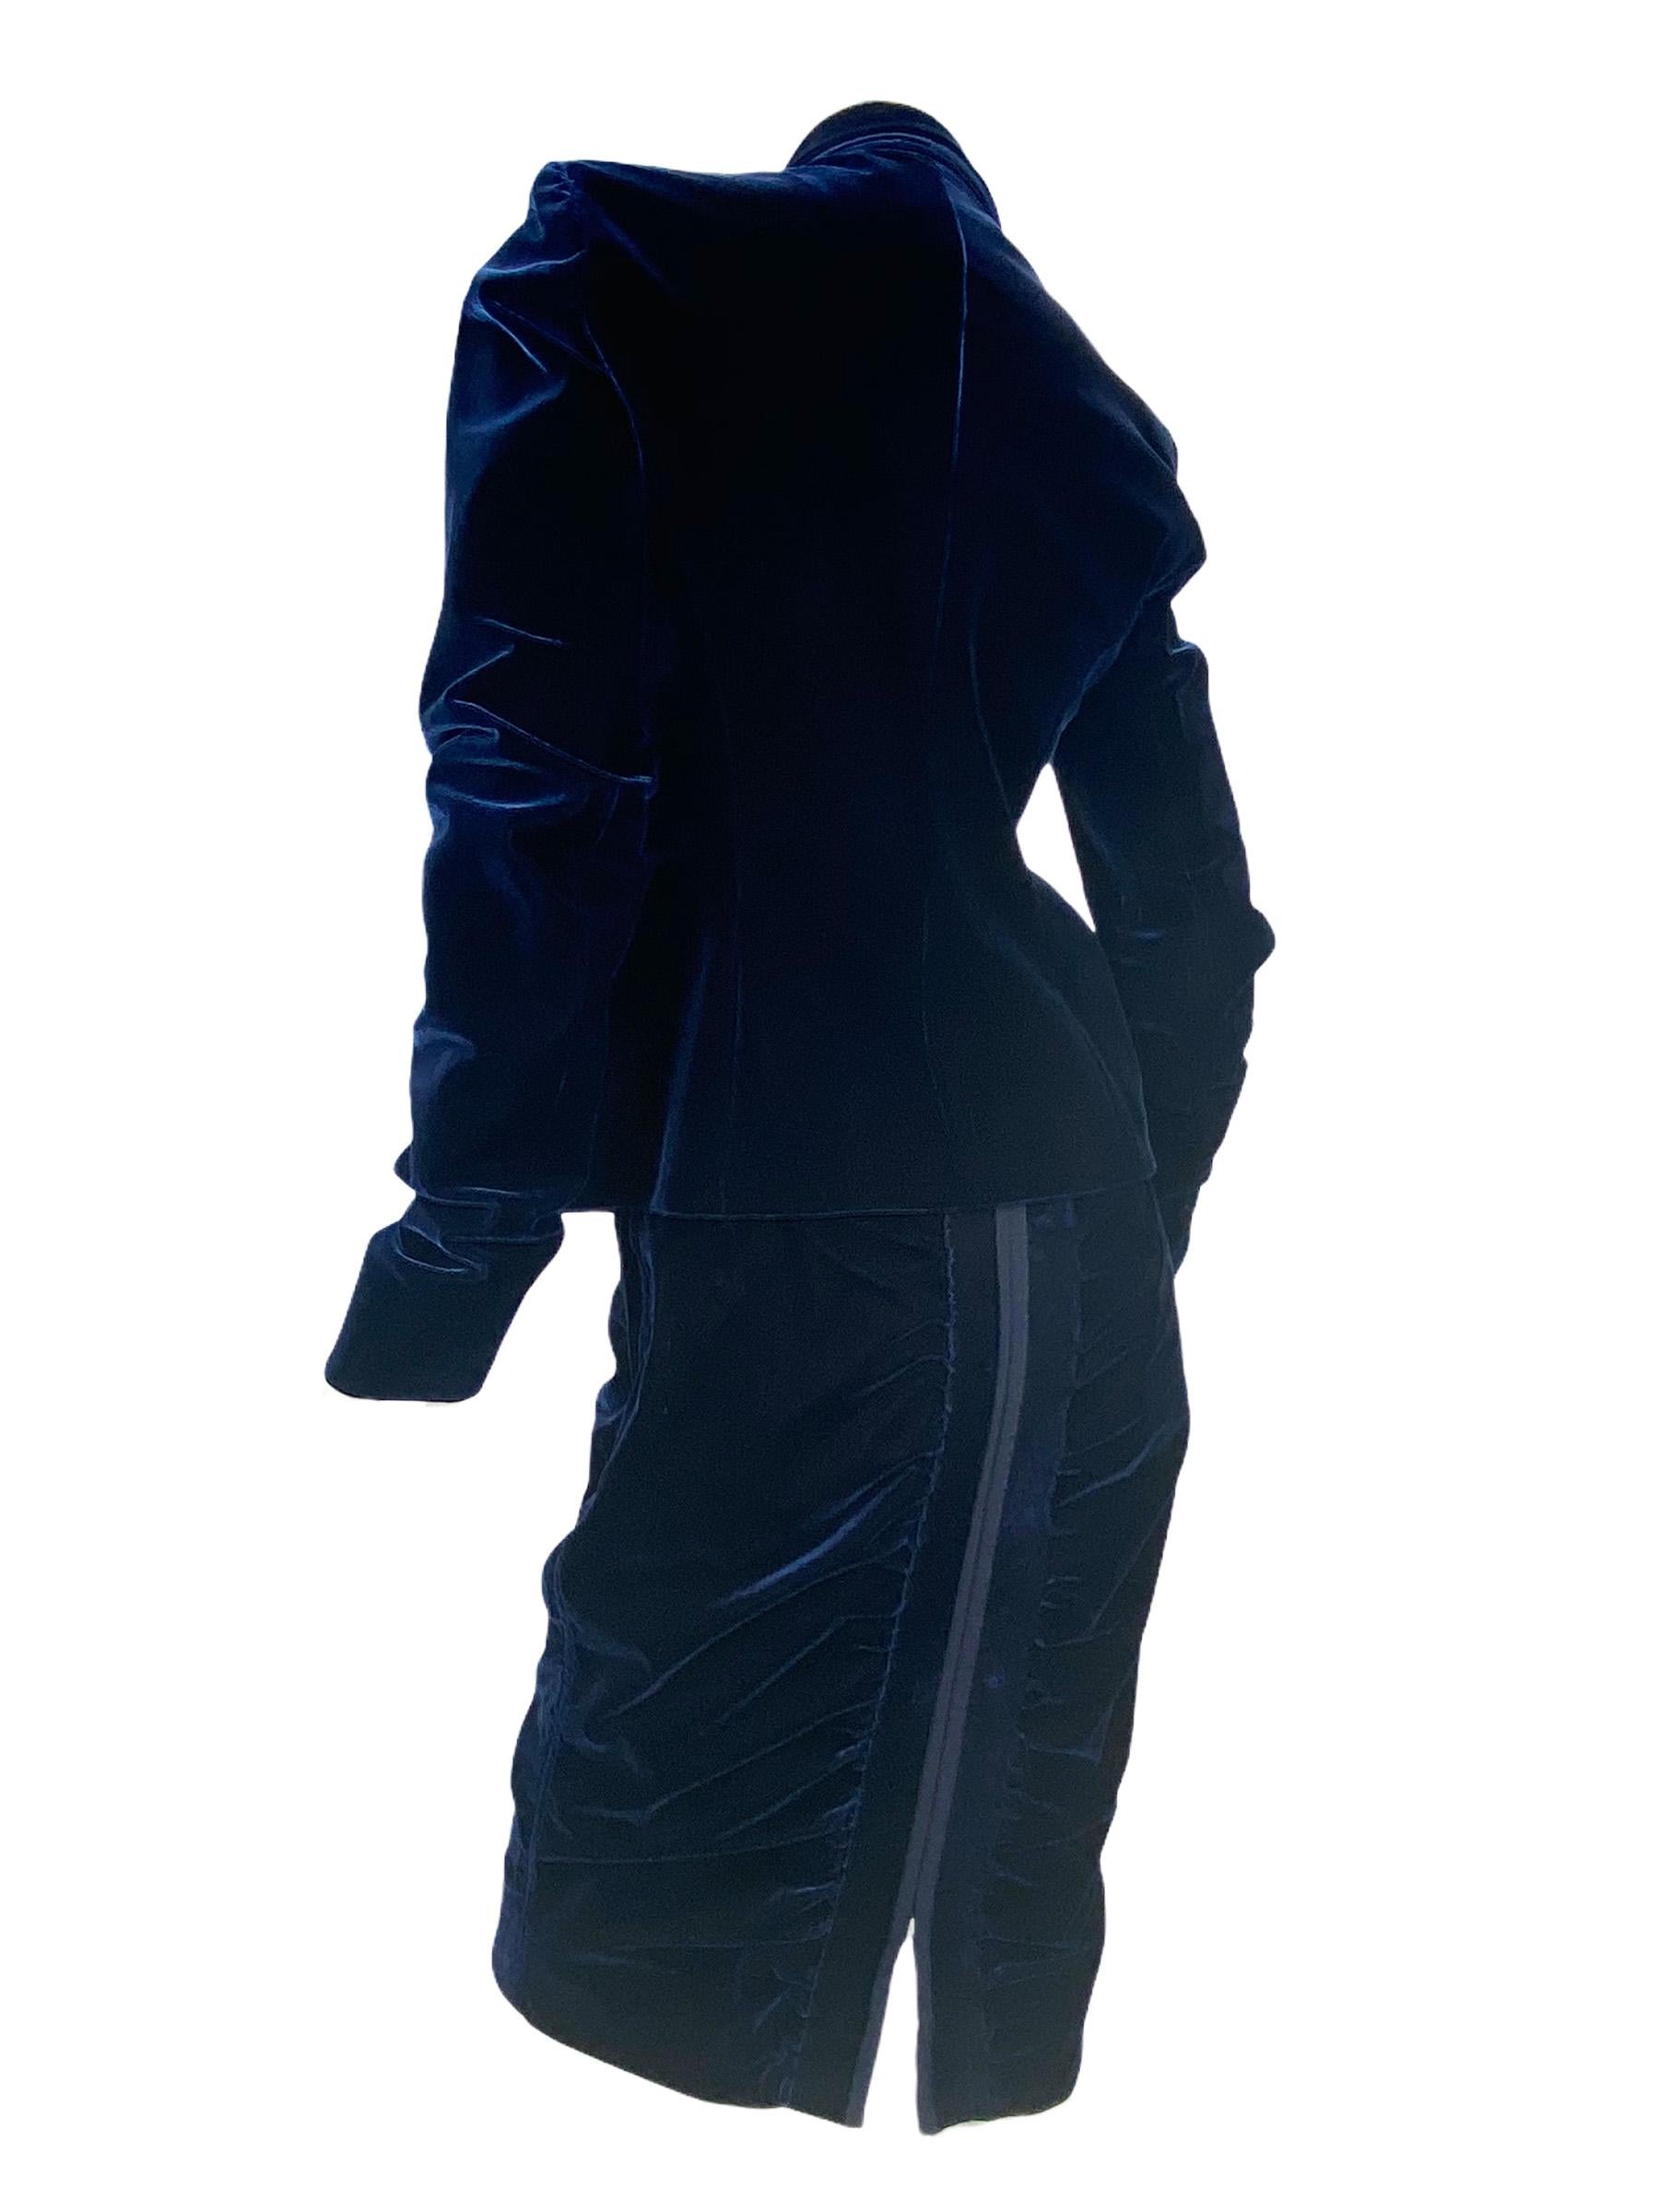 Black 2002 Vintage TOM FORD for YVES SAINT LAURENT Navy Blue Velvet Suit